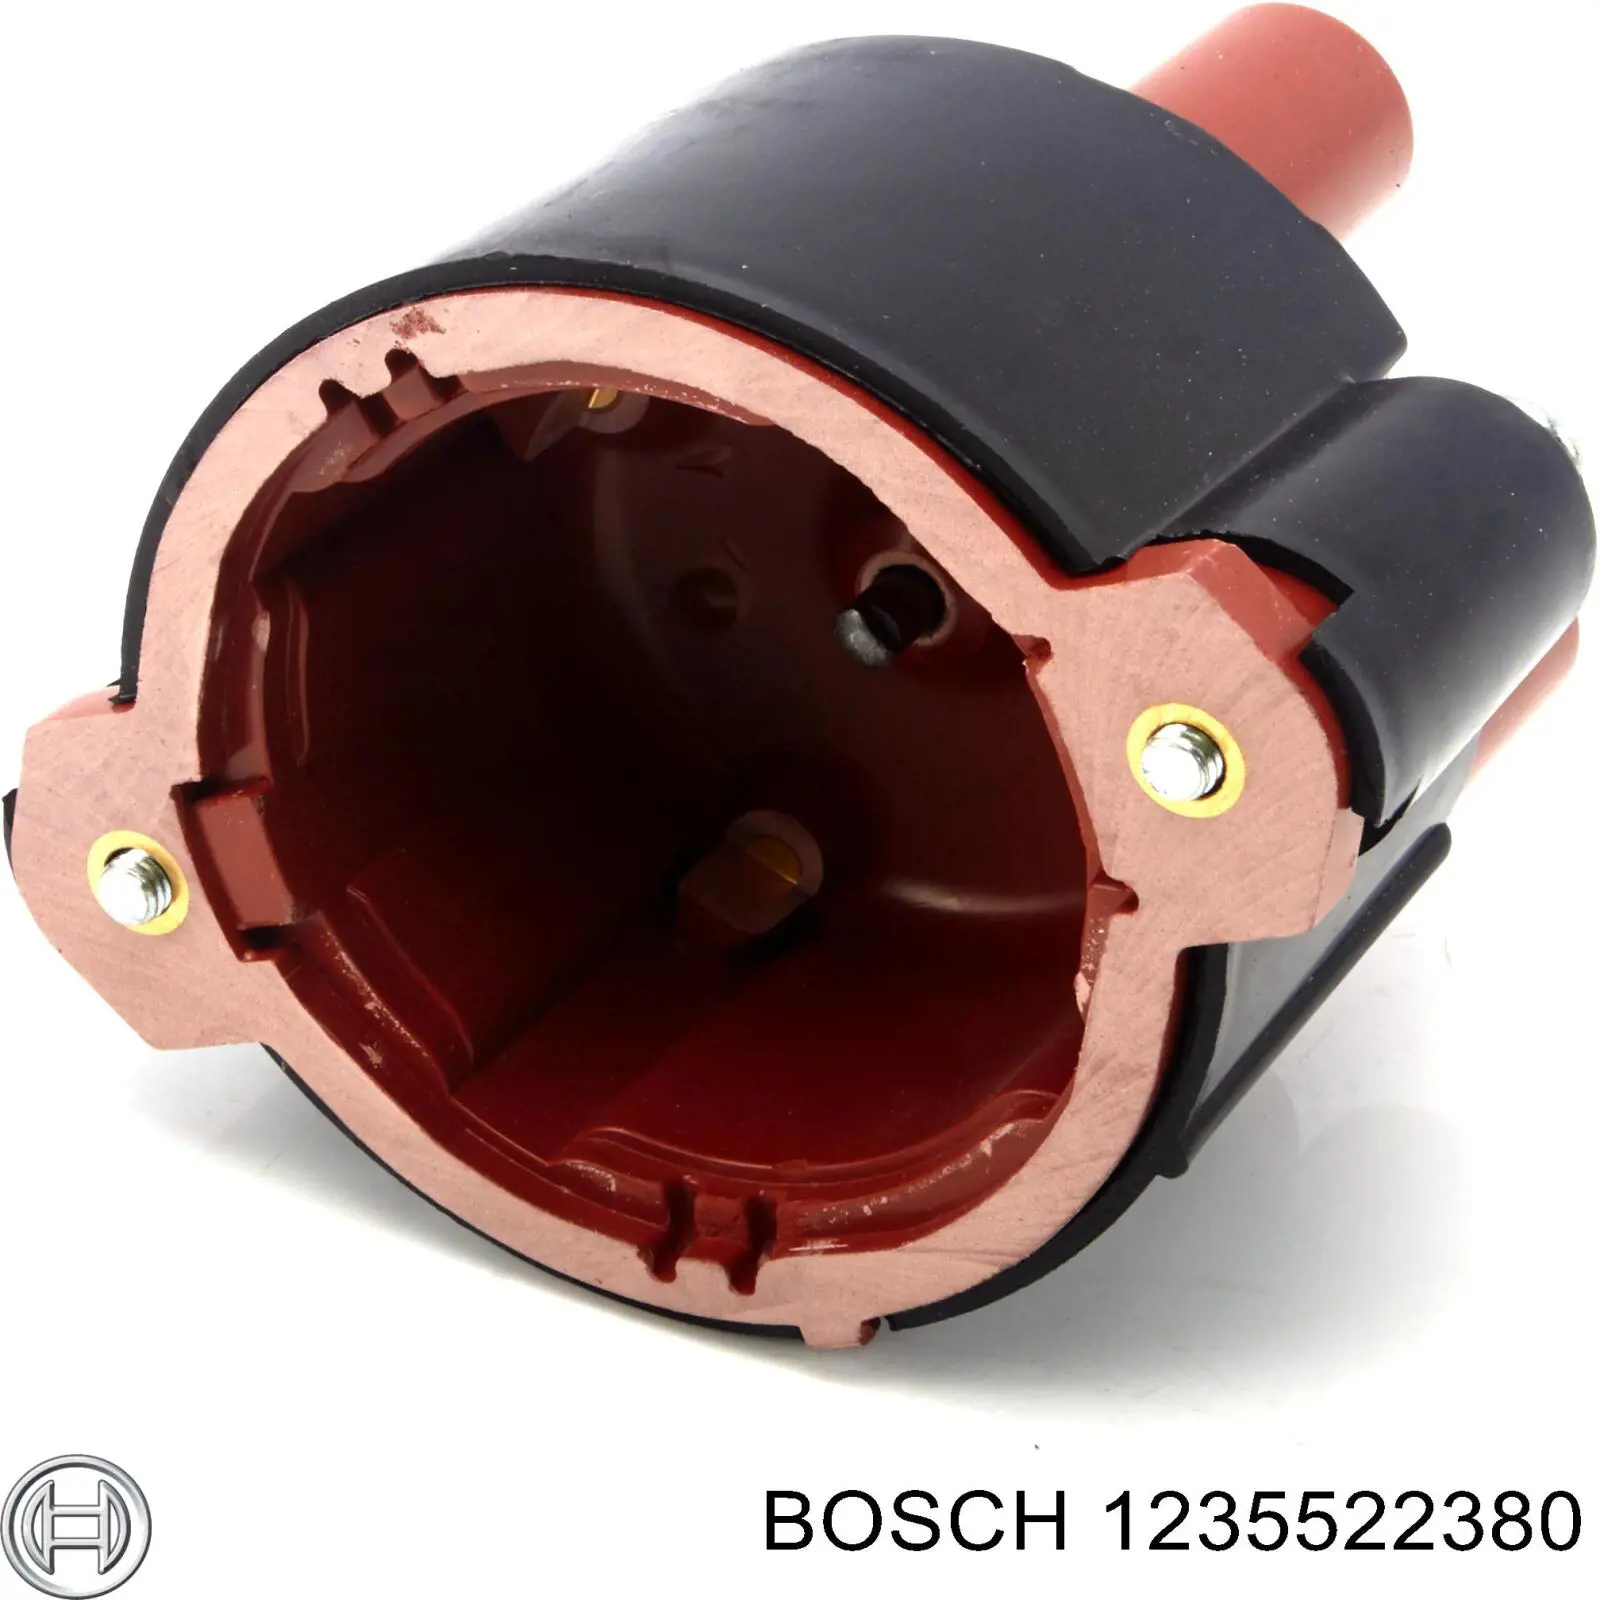 1235522380 Bosch tapa de distribuidor de encendido